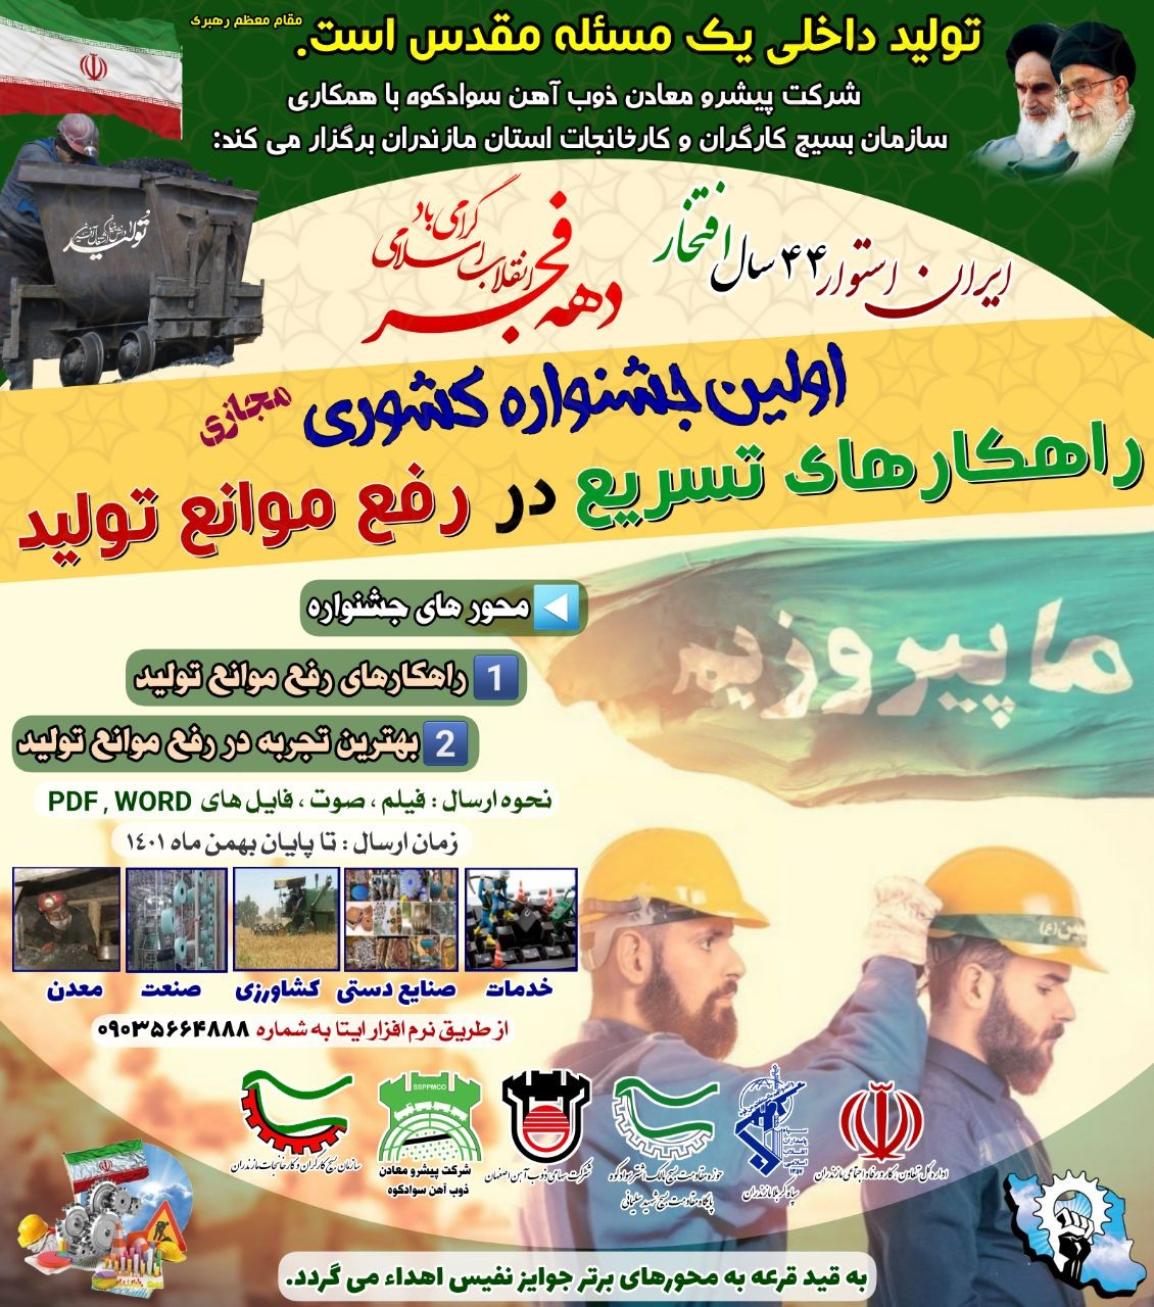 اولین جشنواره کشوری راهکارهای تسریع در رفع موانع تولید در استان مازندران برگزار می گردد